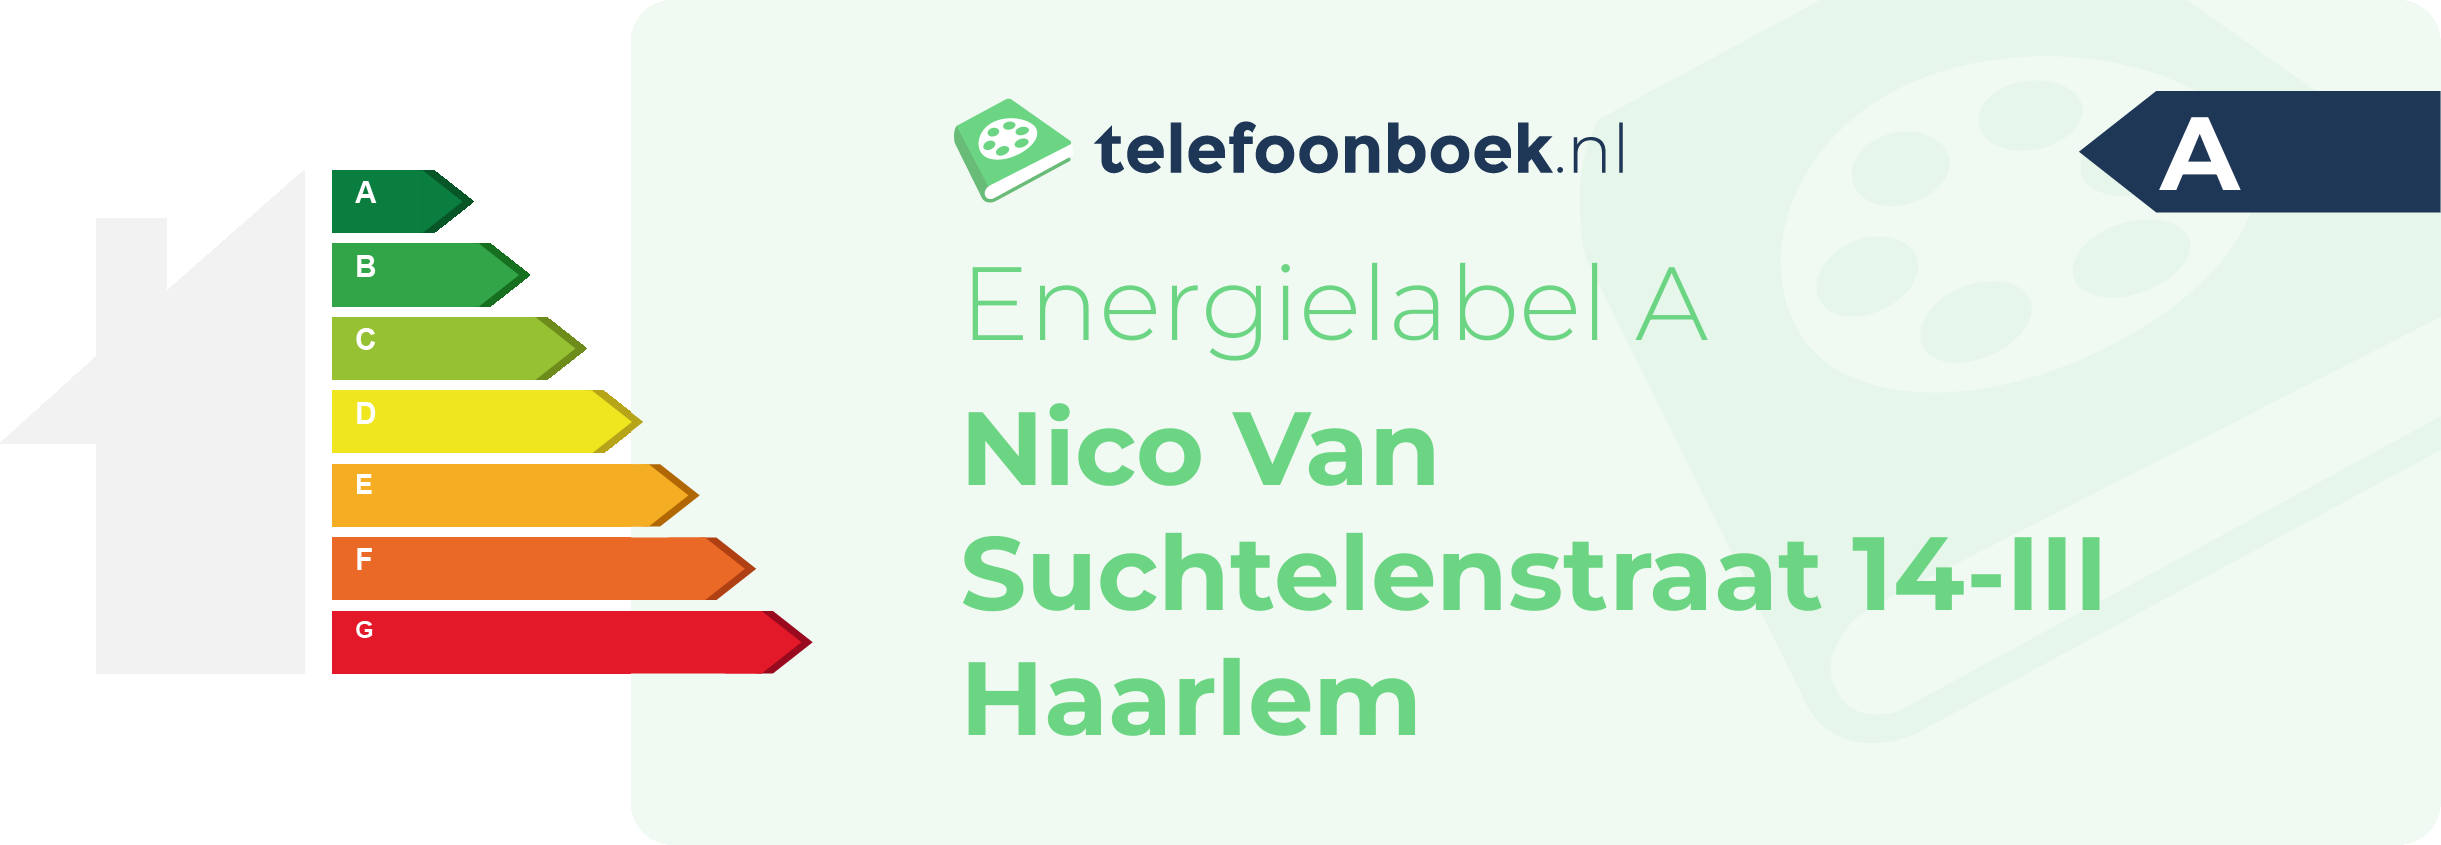 Energielabel Nico Van Suchtelenstraat 14-III Haarlem